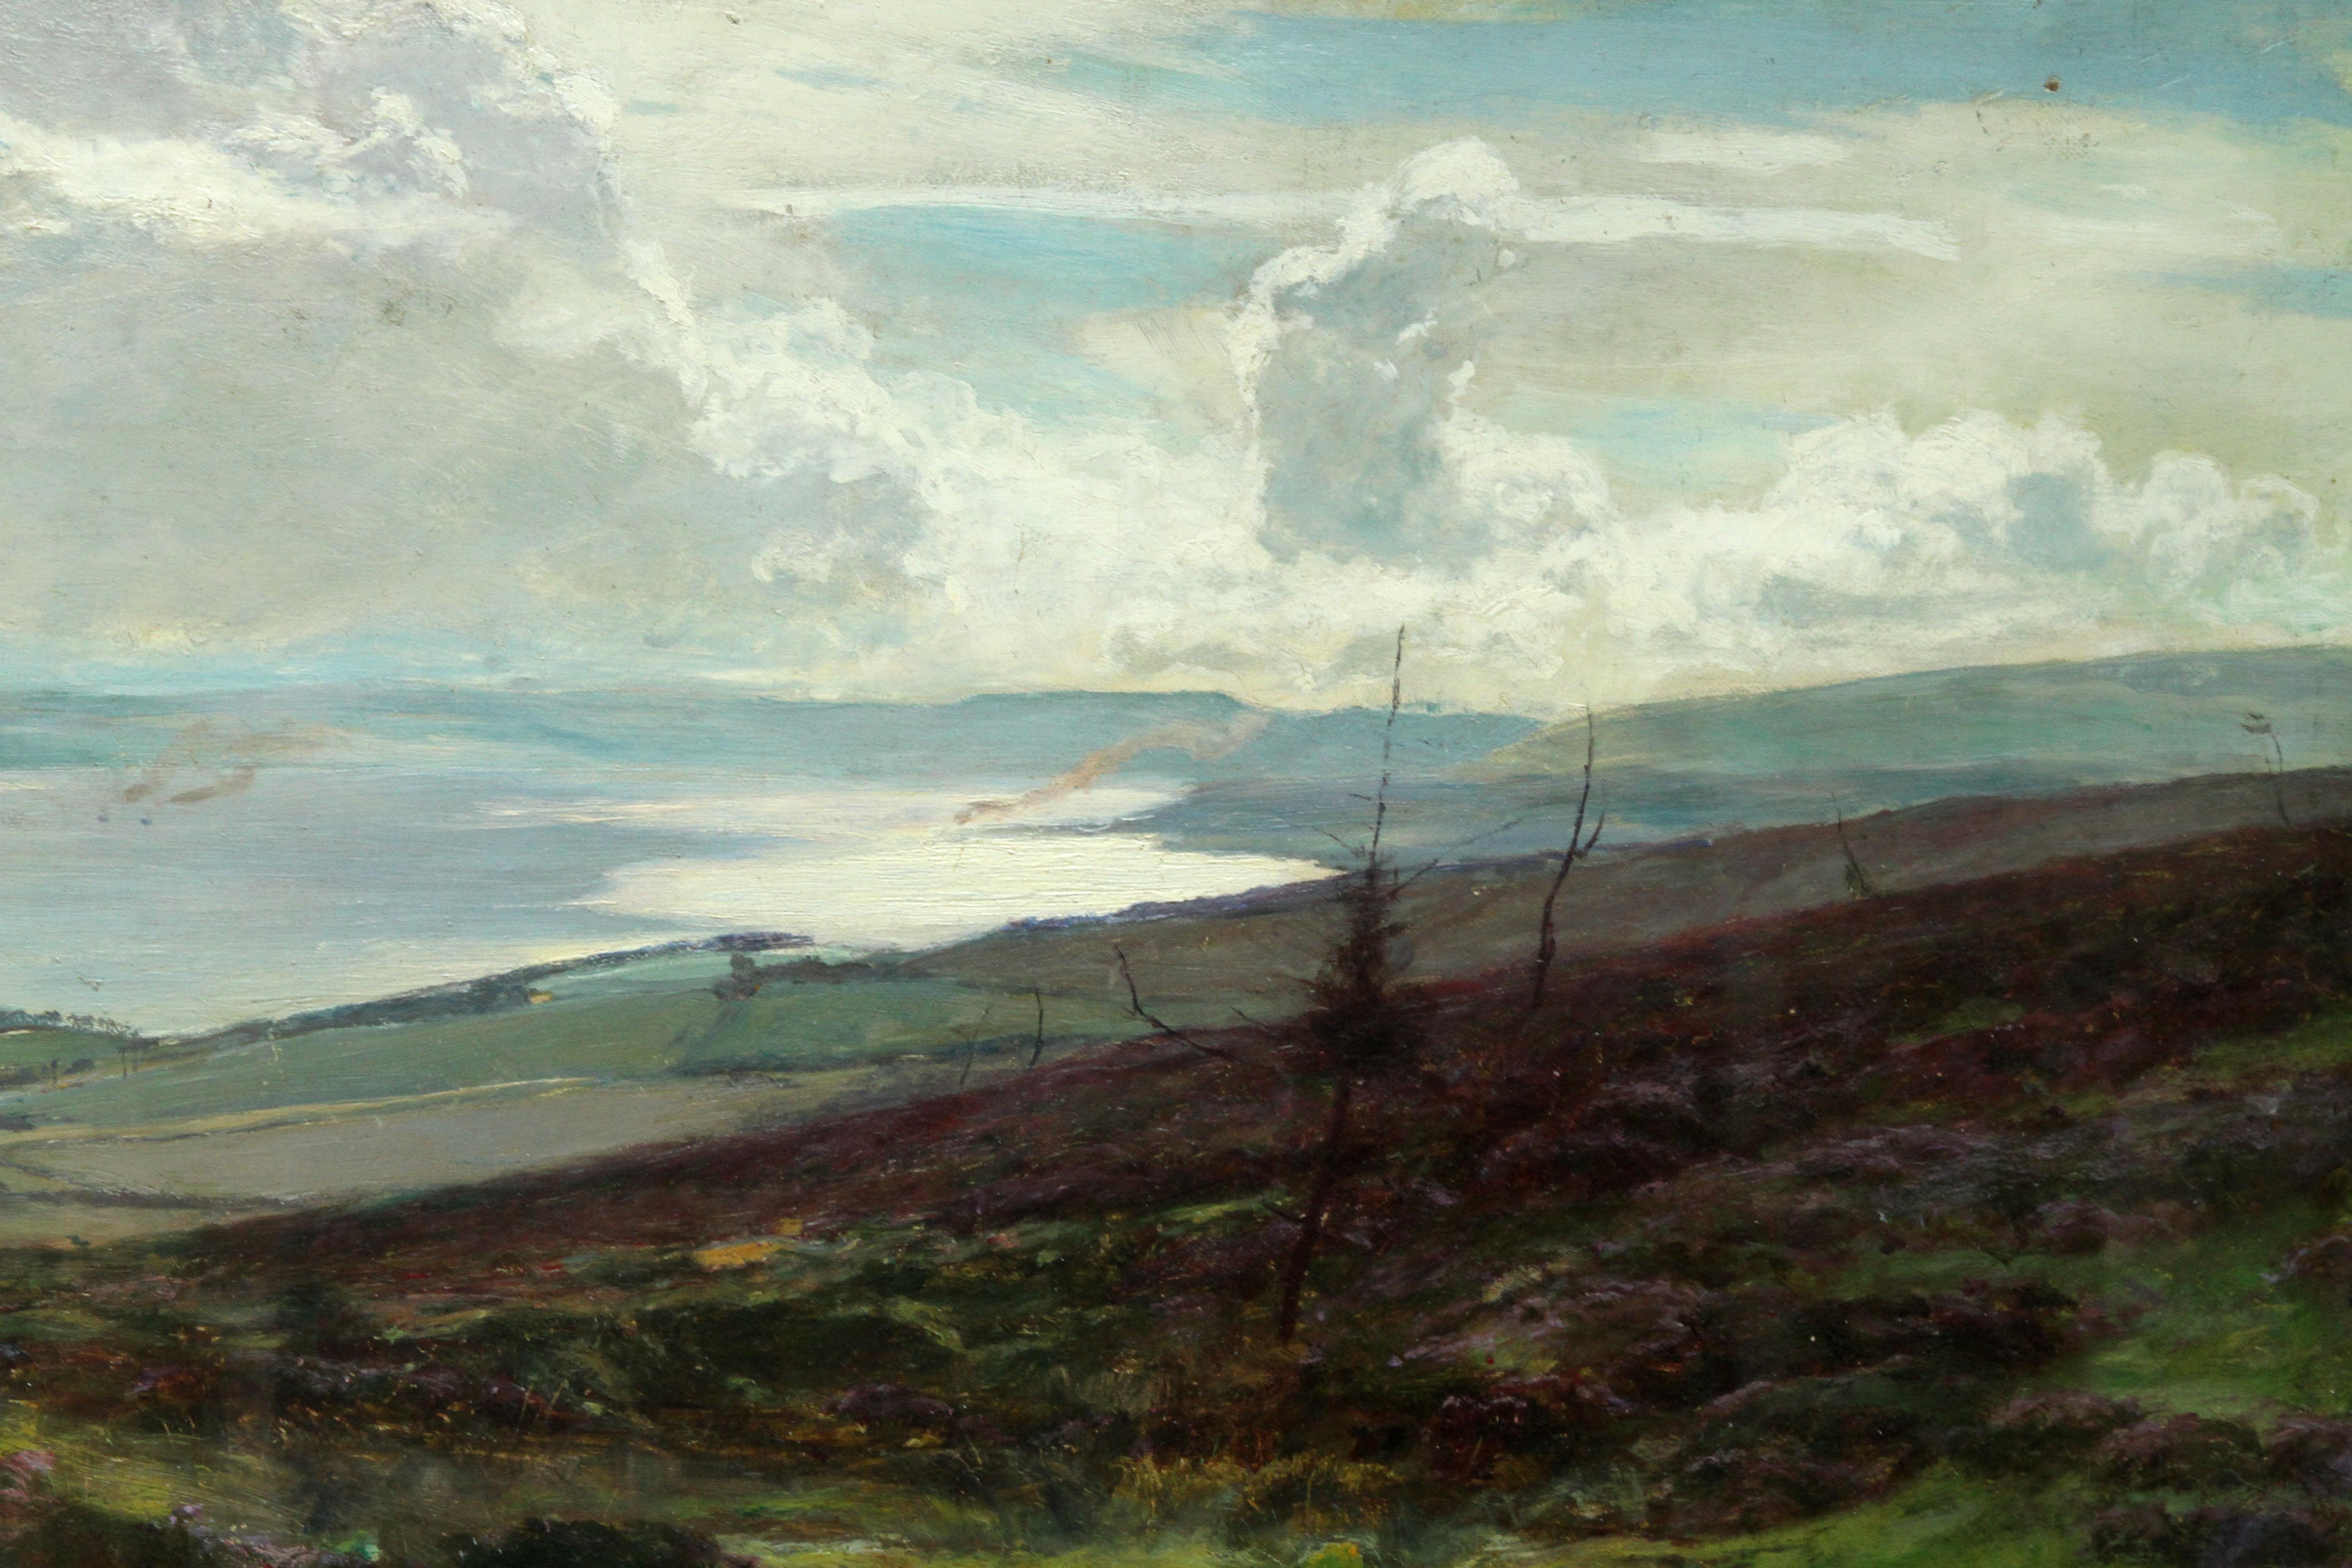 Ce superbe paysage écossais panoramique victorien exposé est l'œuvre du célèbre artiste écossais Sir David Murray. Elle a été peinte et exposée en 1881 à la Royal Scottish Academy sous le numéro 514 